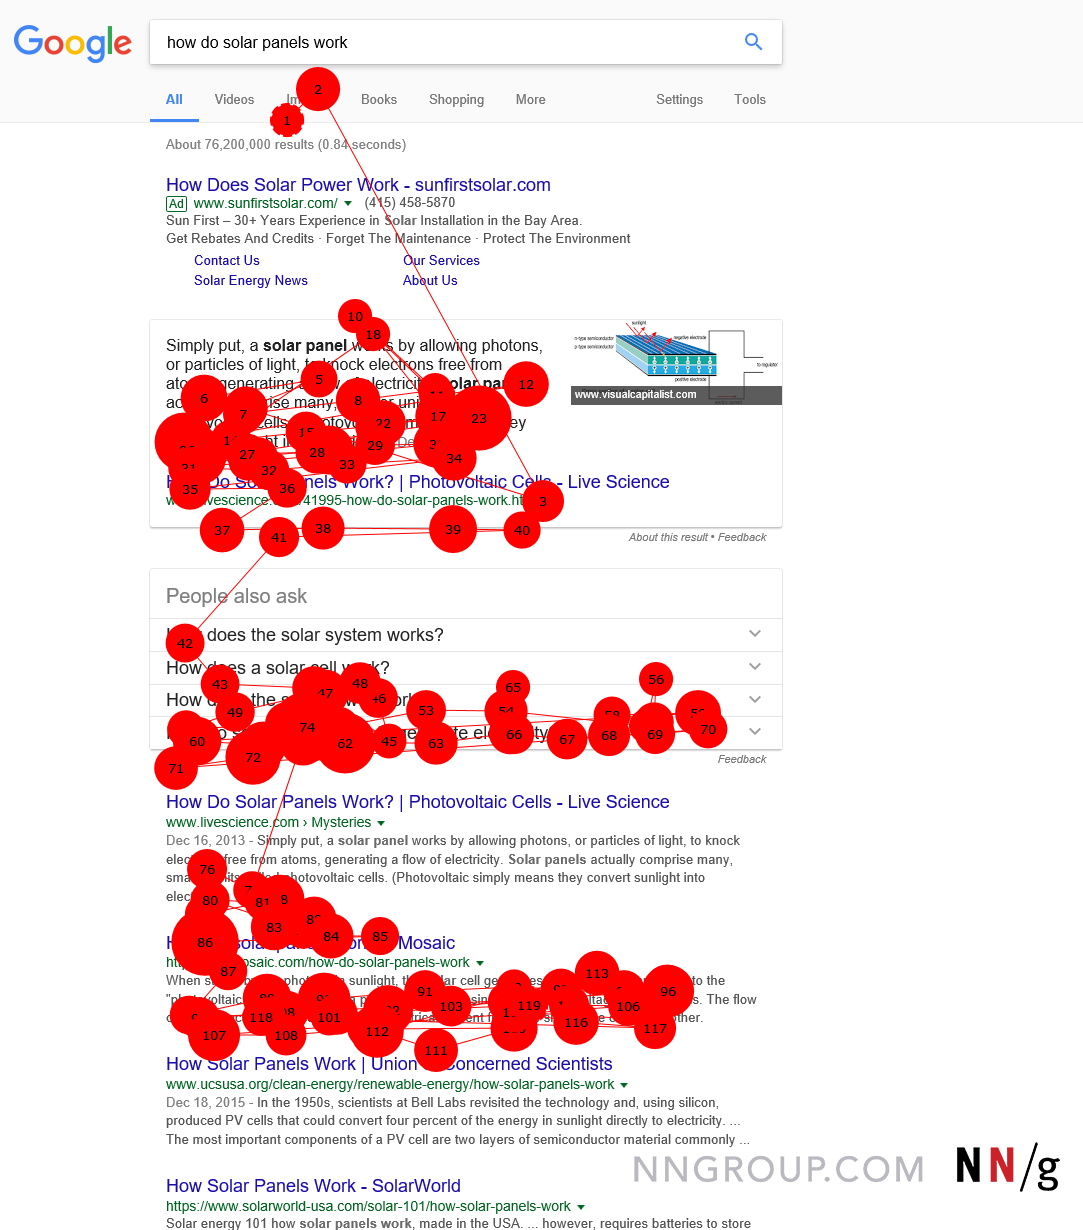  Этот участок обзора показывает, что на странице результатов поисковой системы Google (SERP) пользователь не смотрел на весь первый «результат», рекламу. Каждая красная точка обозначает фиксацию взгляда пользователя, линии отражают перемещение глаз, во время которых пользователь ничего не видит.